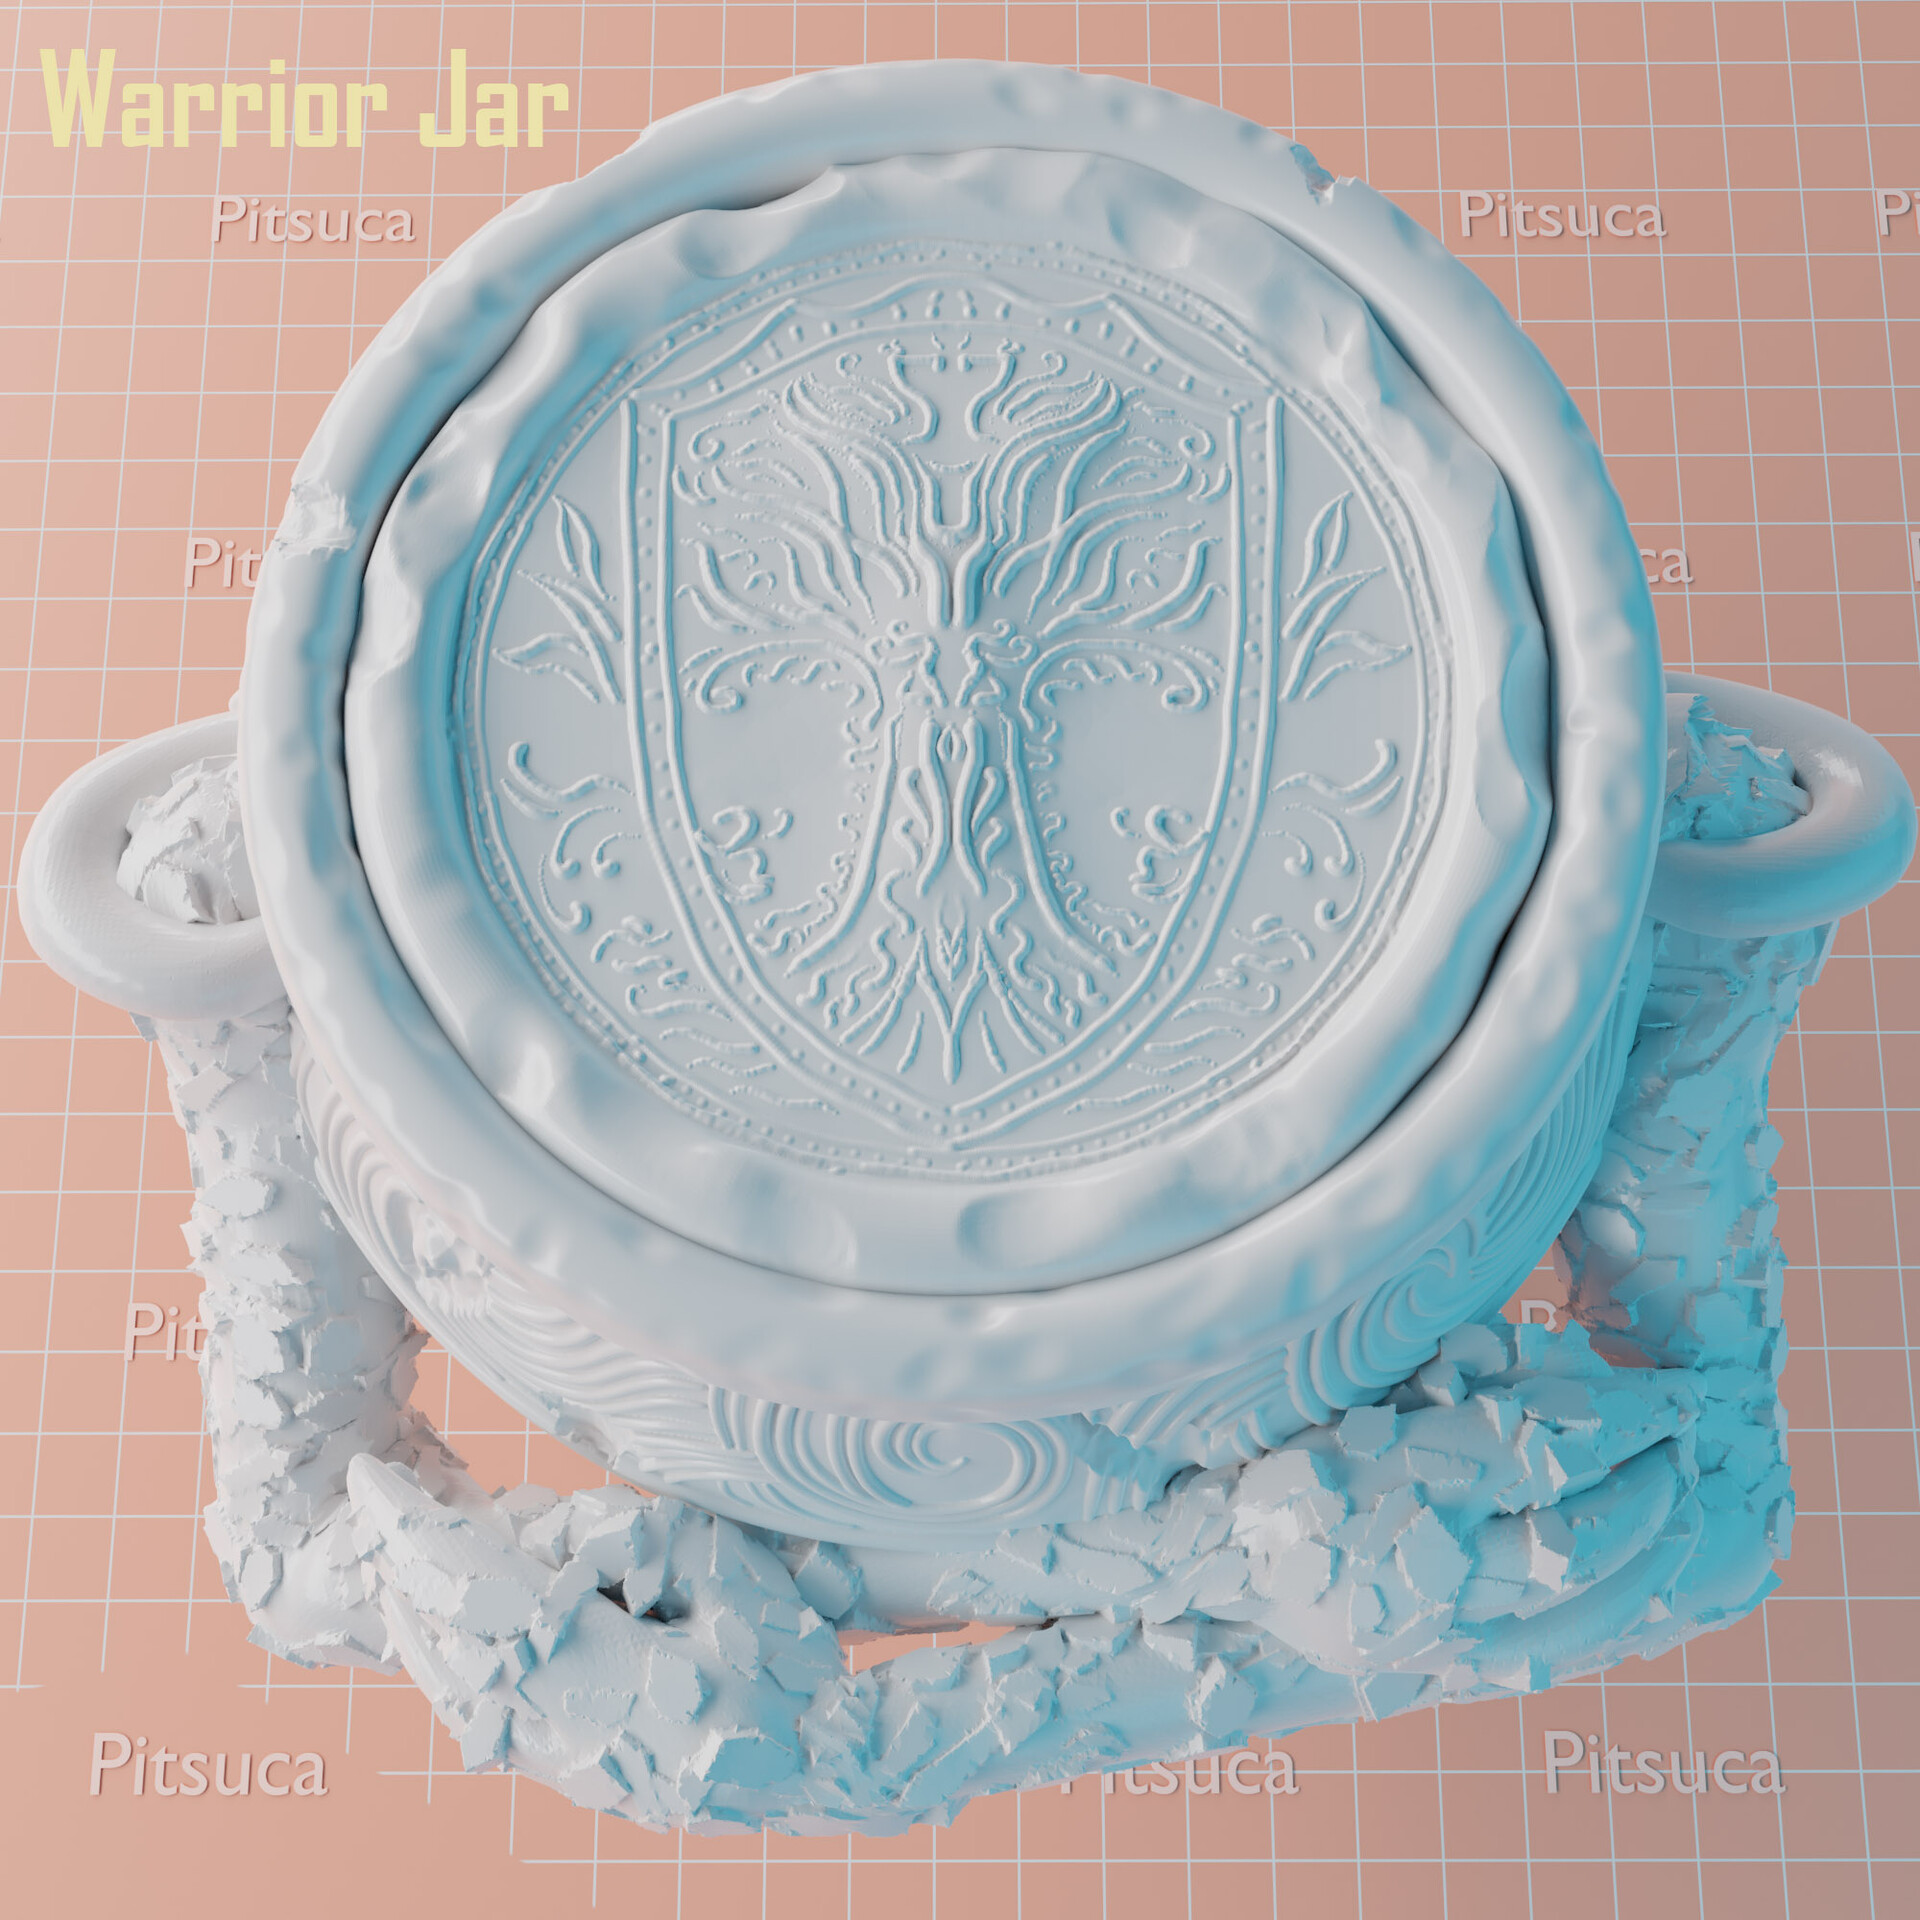 ArtStation - Iron Fist Alexander- Warrior Jar in White Orchard